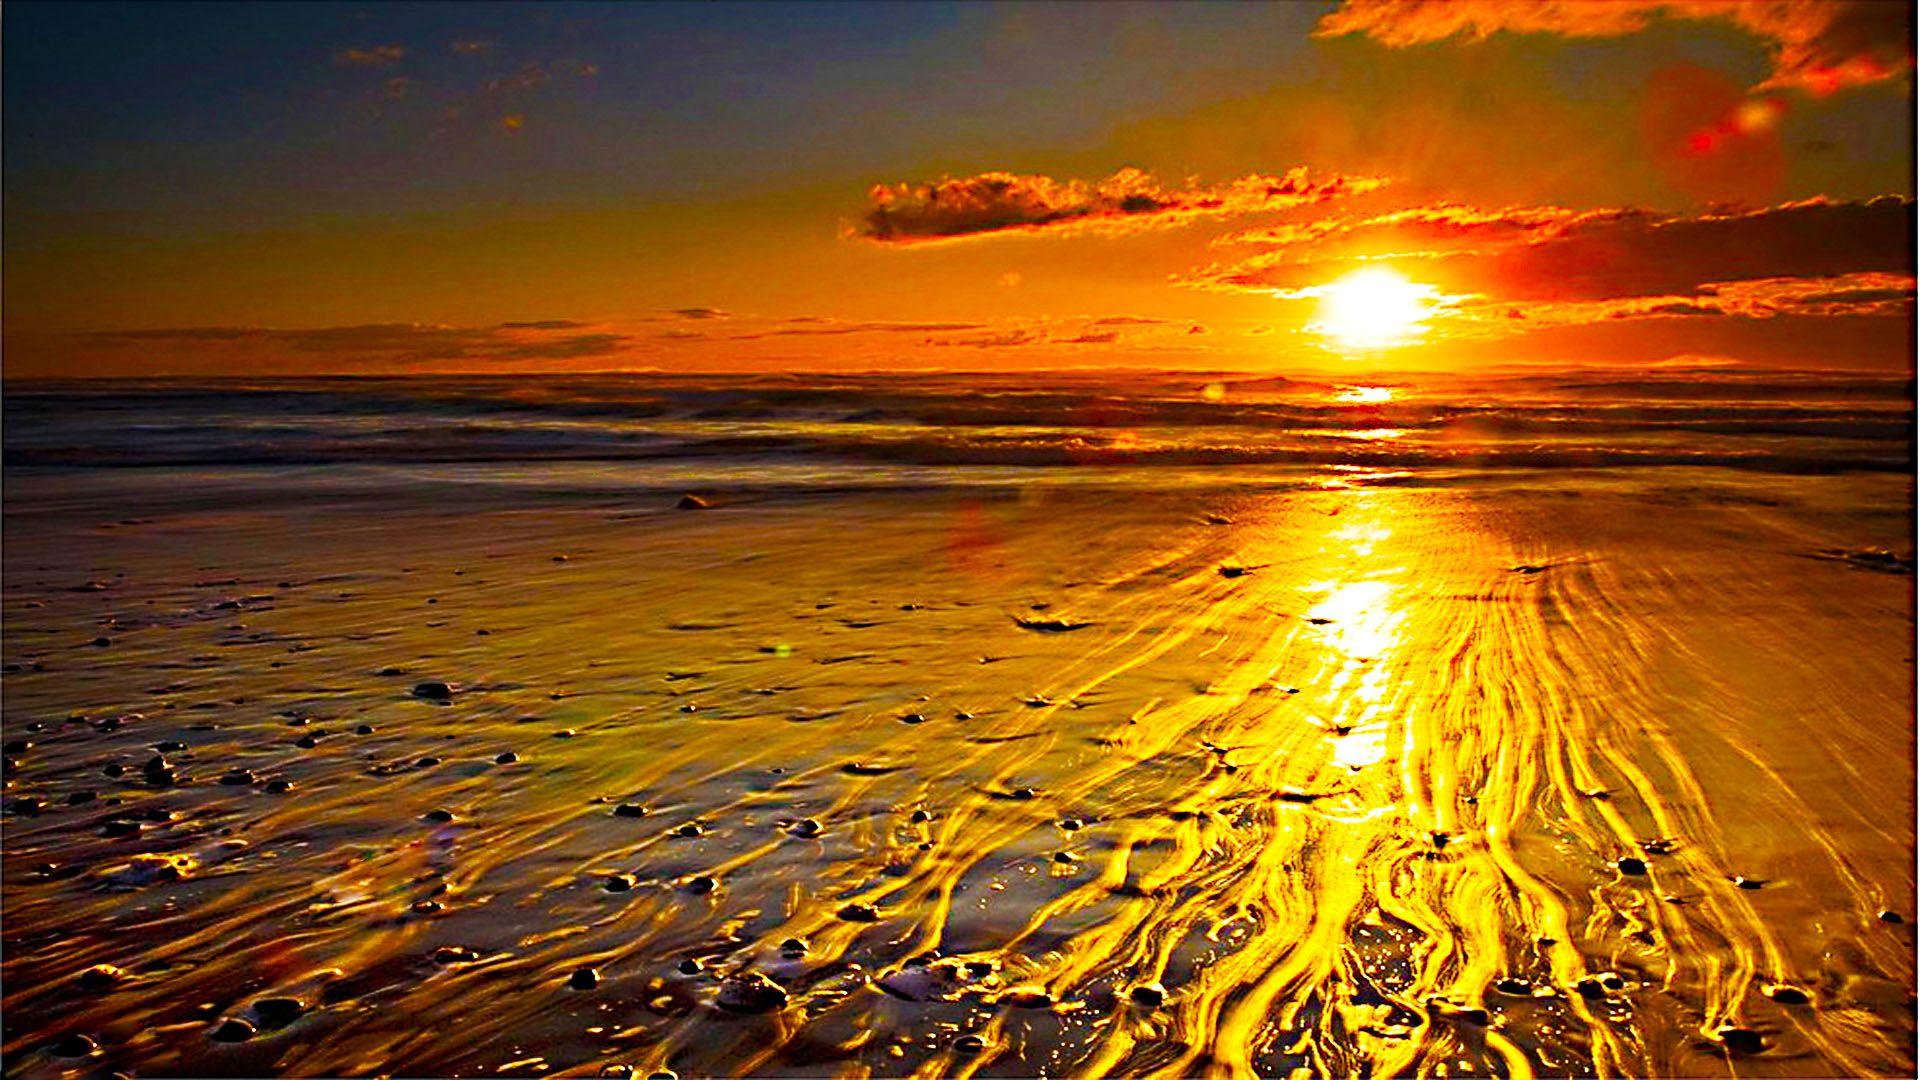 Goreous Golden Sunrise!. Sunrise wallpaper, Beach wallpaper, Sunset